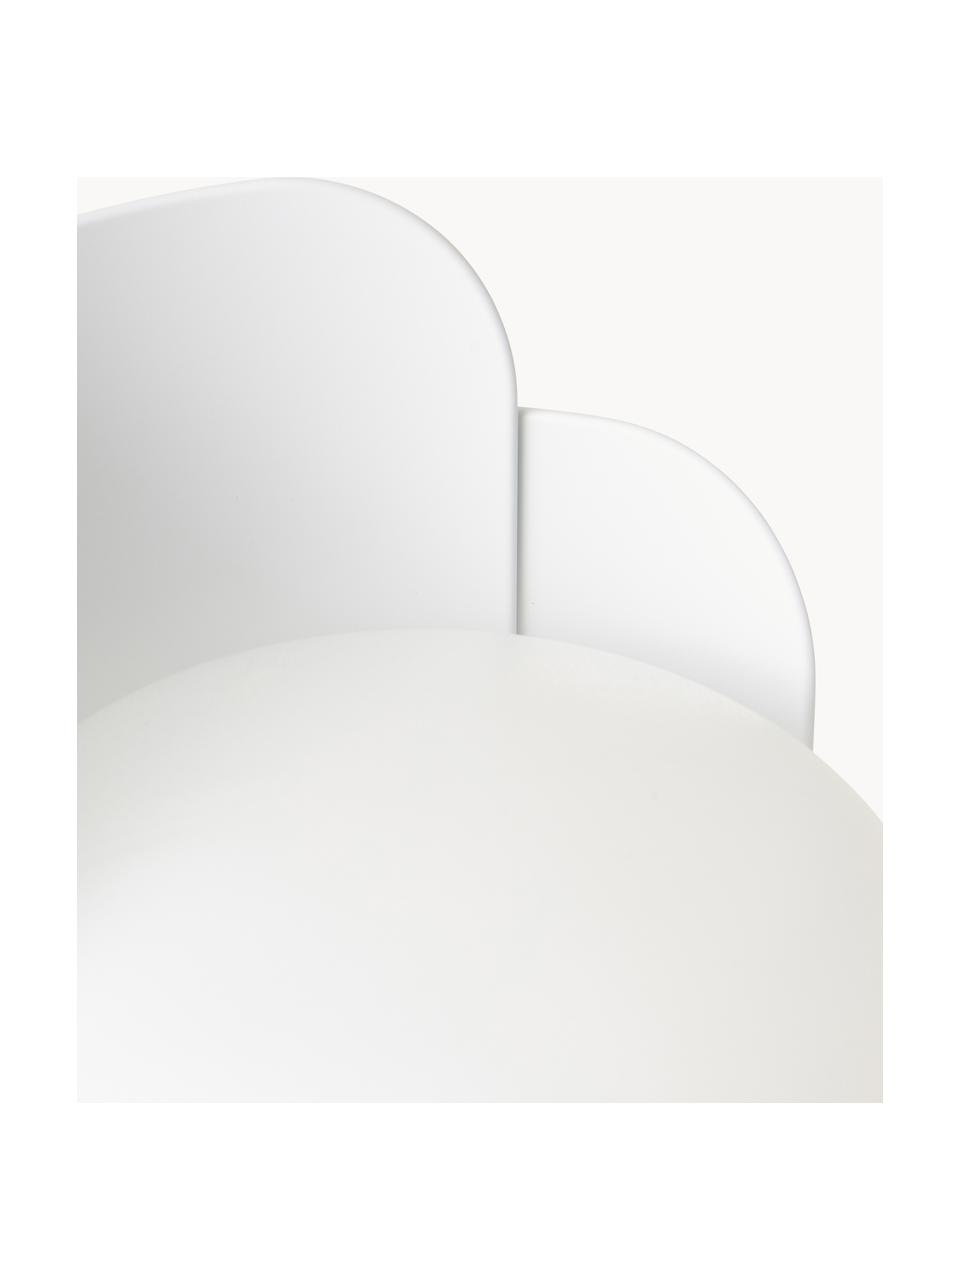 Lámpara de mesa artesanal pequeña Blom, Pantalla: plástico, Estructura: metal recubierto, Cable: plástico, Blanco, Ø 15 x Al 24 cm